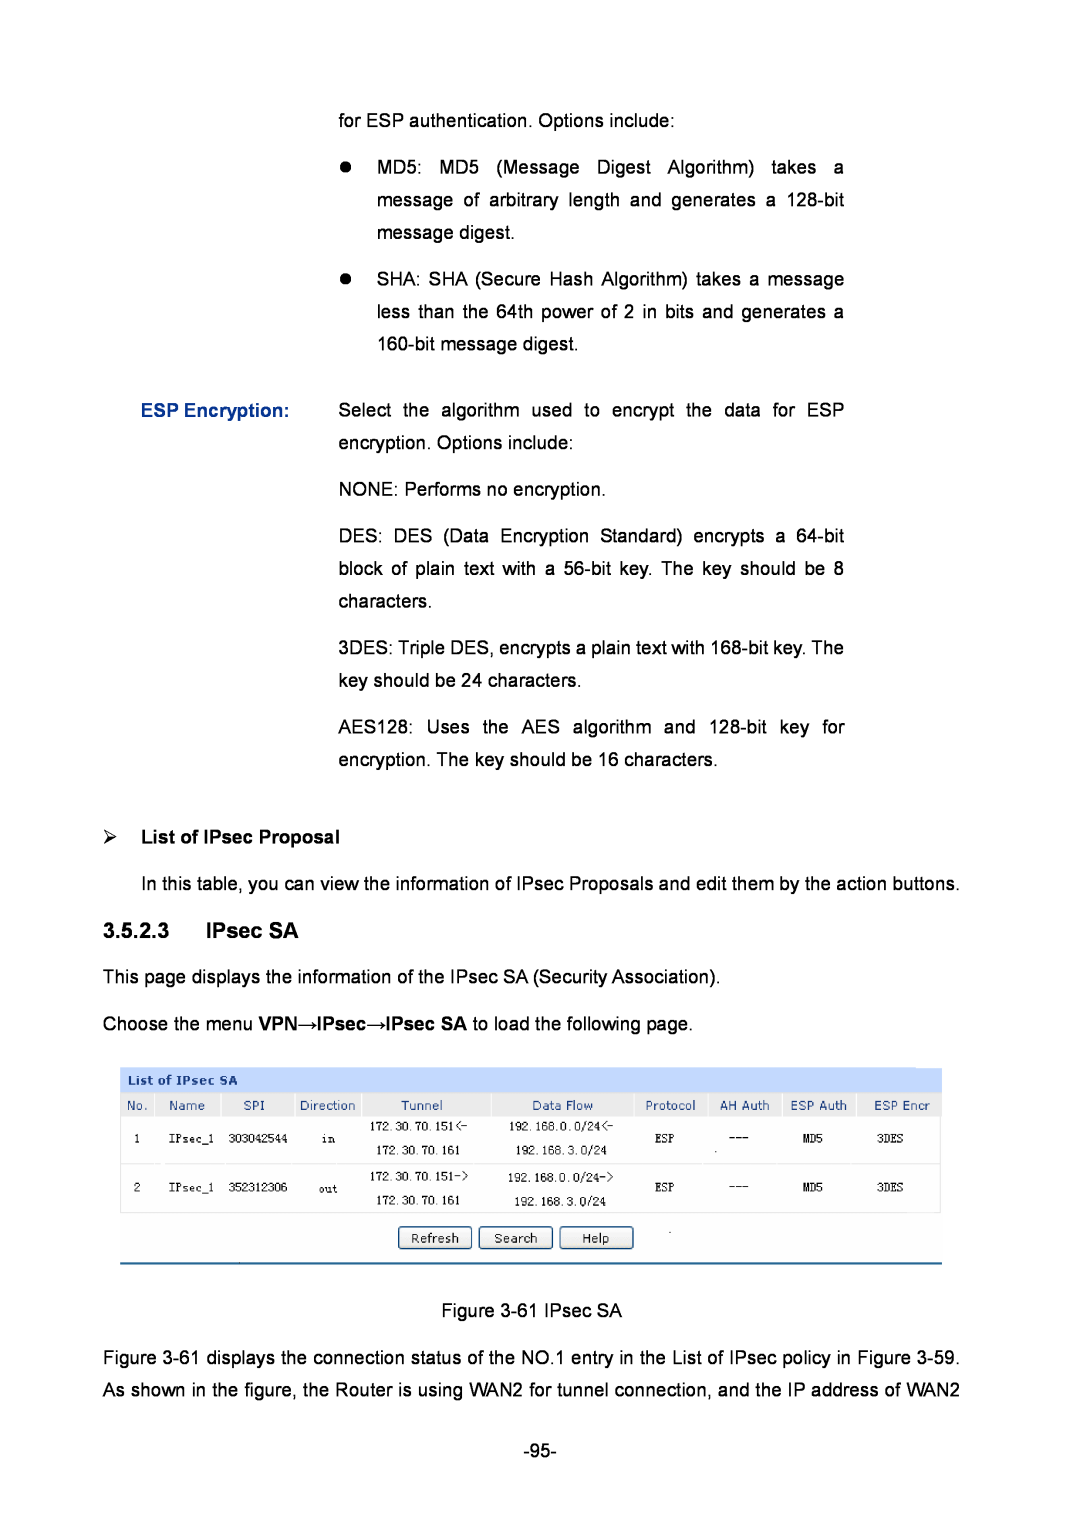 TP-Link TL-ER6120 manual IPsec SA, ¾ List of IPsec Proposal 